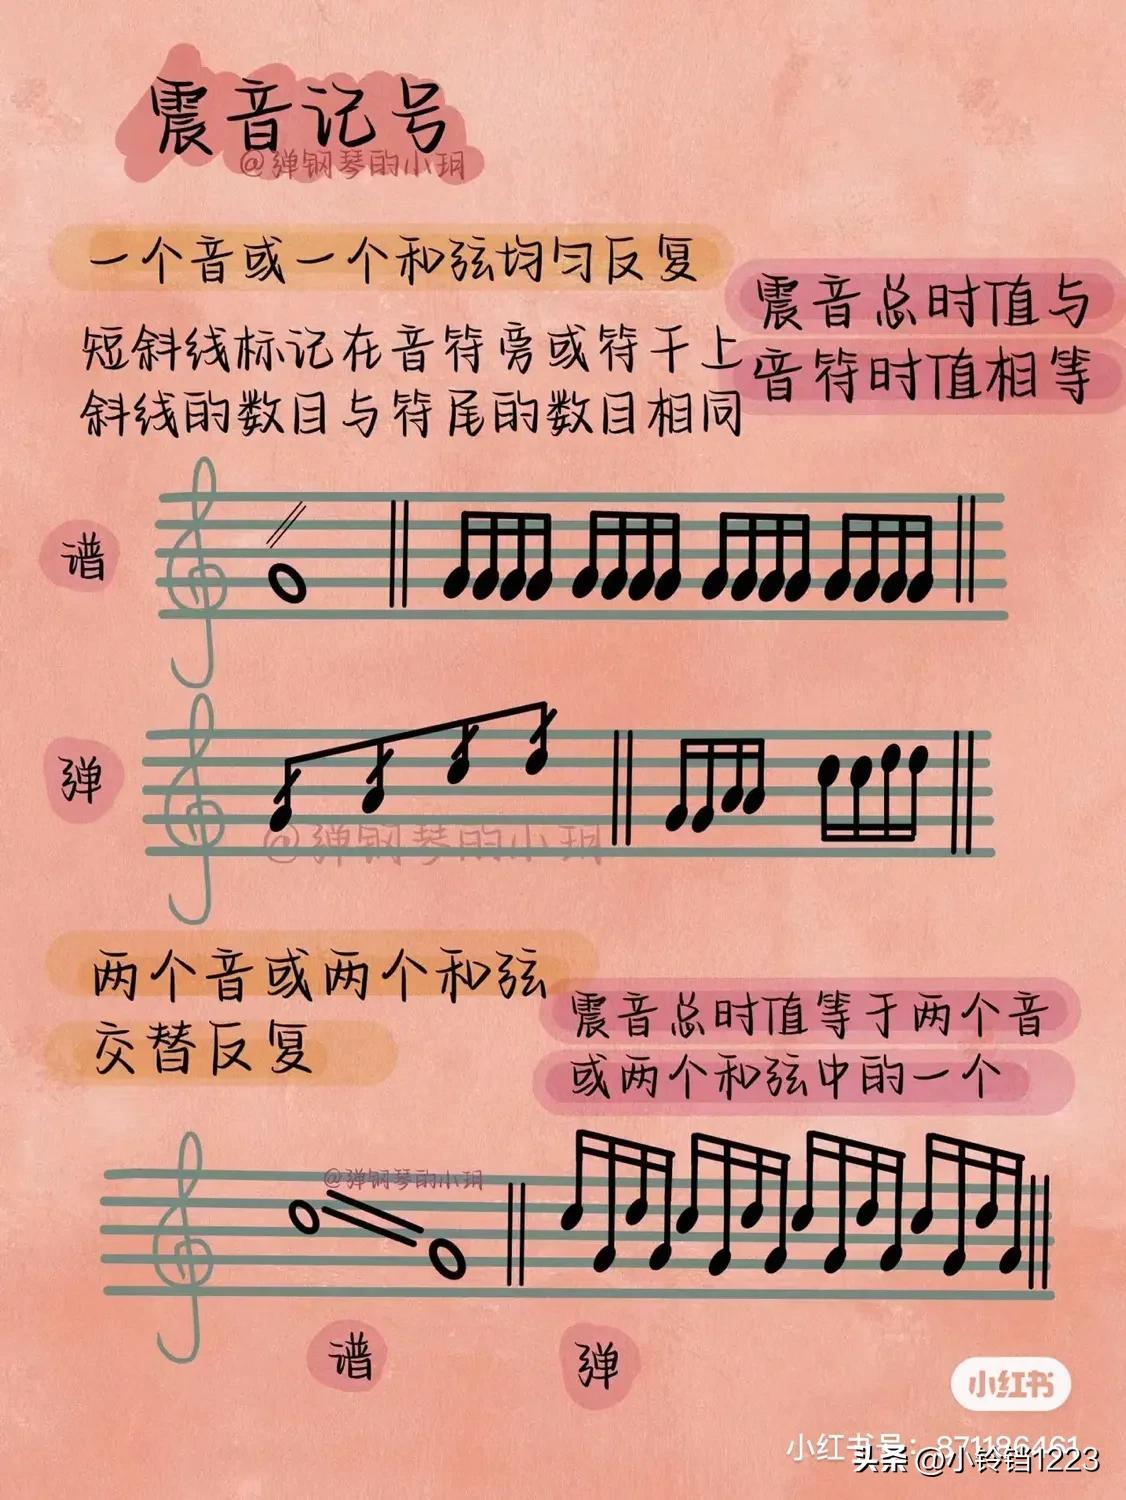 钢琴曲谱的符号含义是什么，钢琴谱特殊符号图案及解释